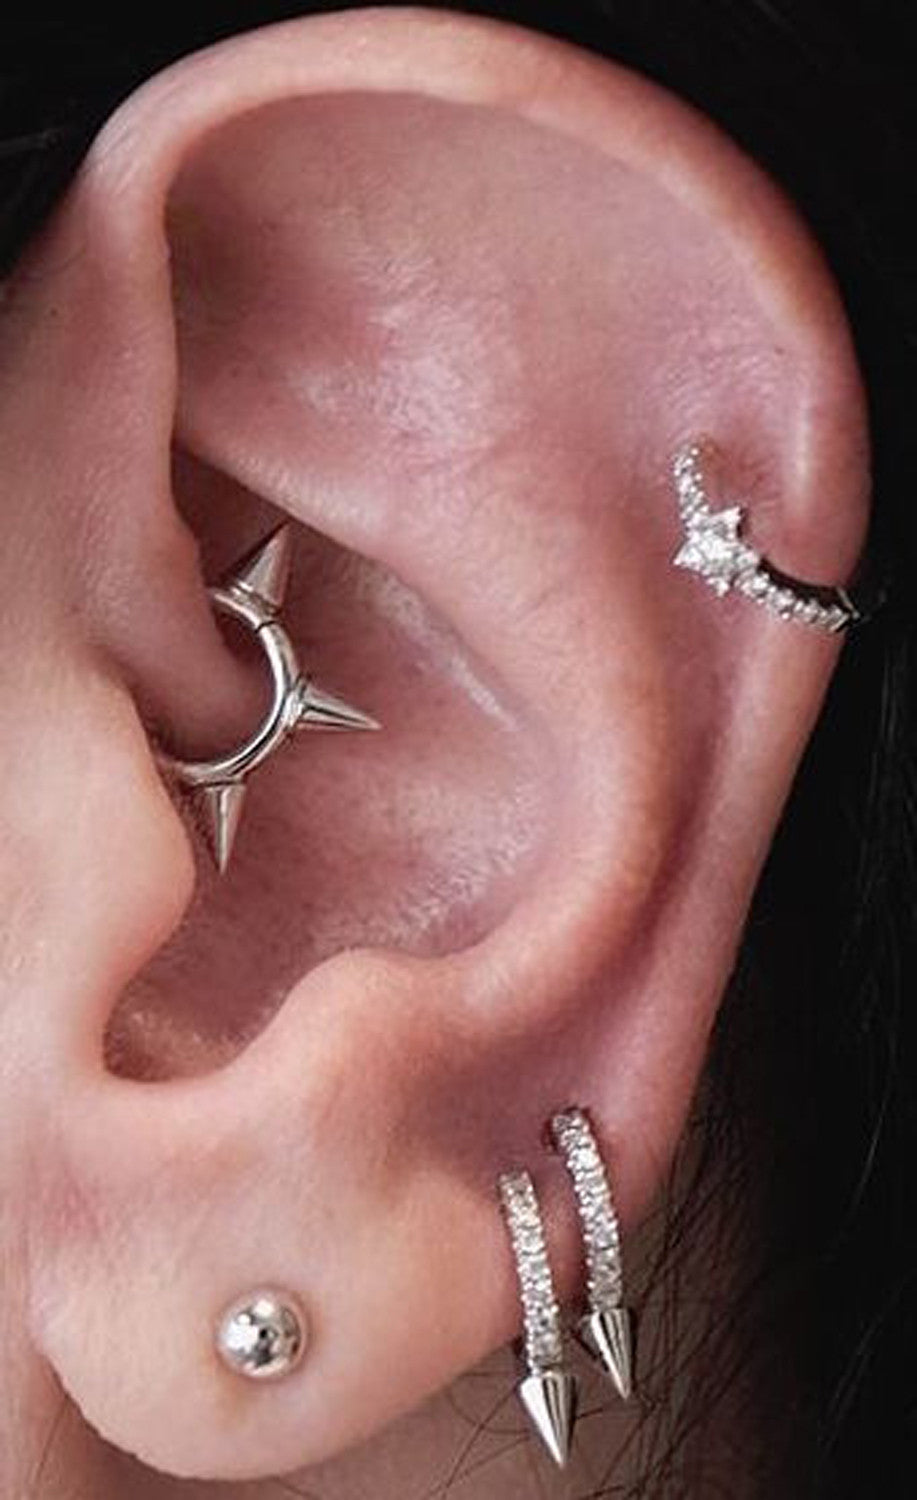 Cool Celebrity Ear Piercing Ideas at MyBodiArt.com - Spiky Rook Jewelry Daith Earrings Cartilage Hoop Silver Ear Lobe Studs